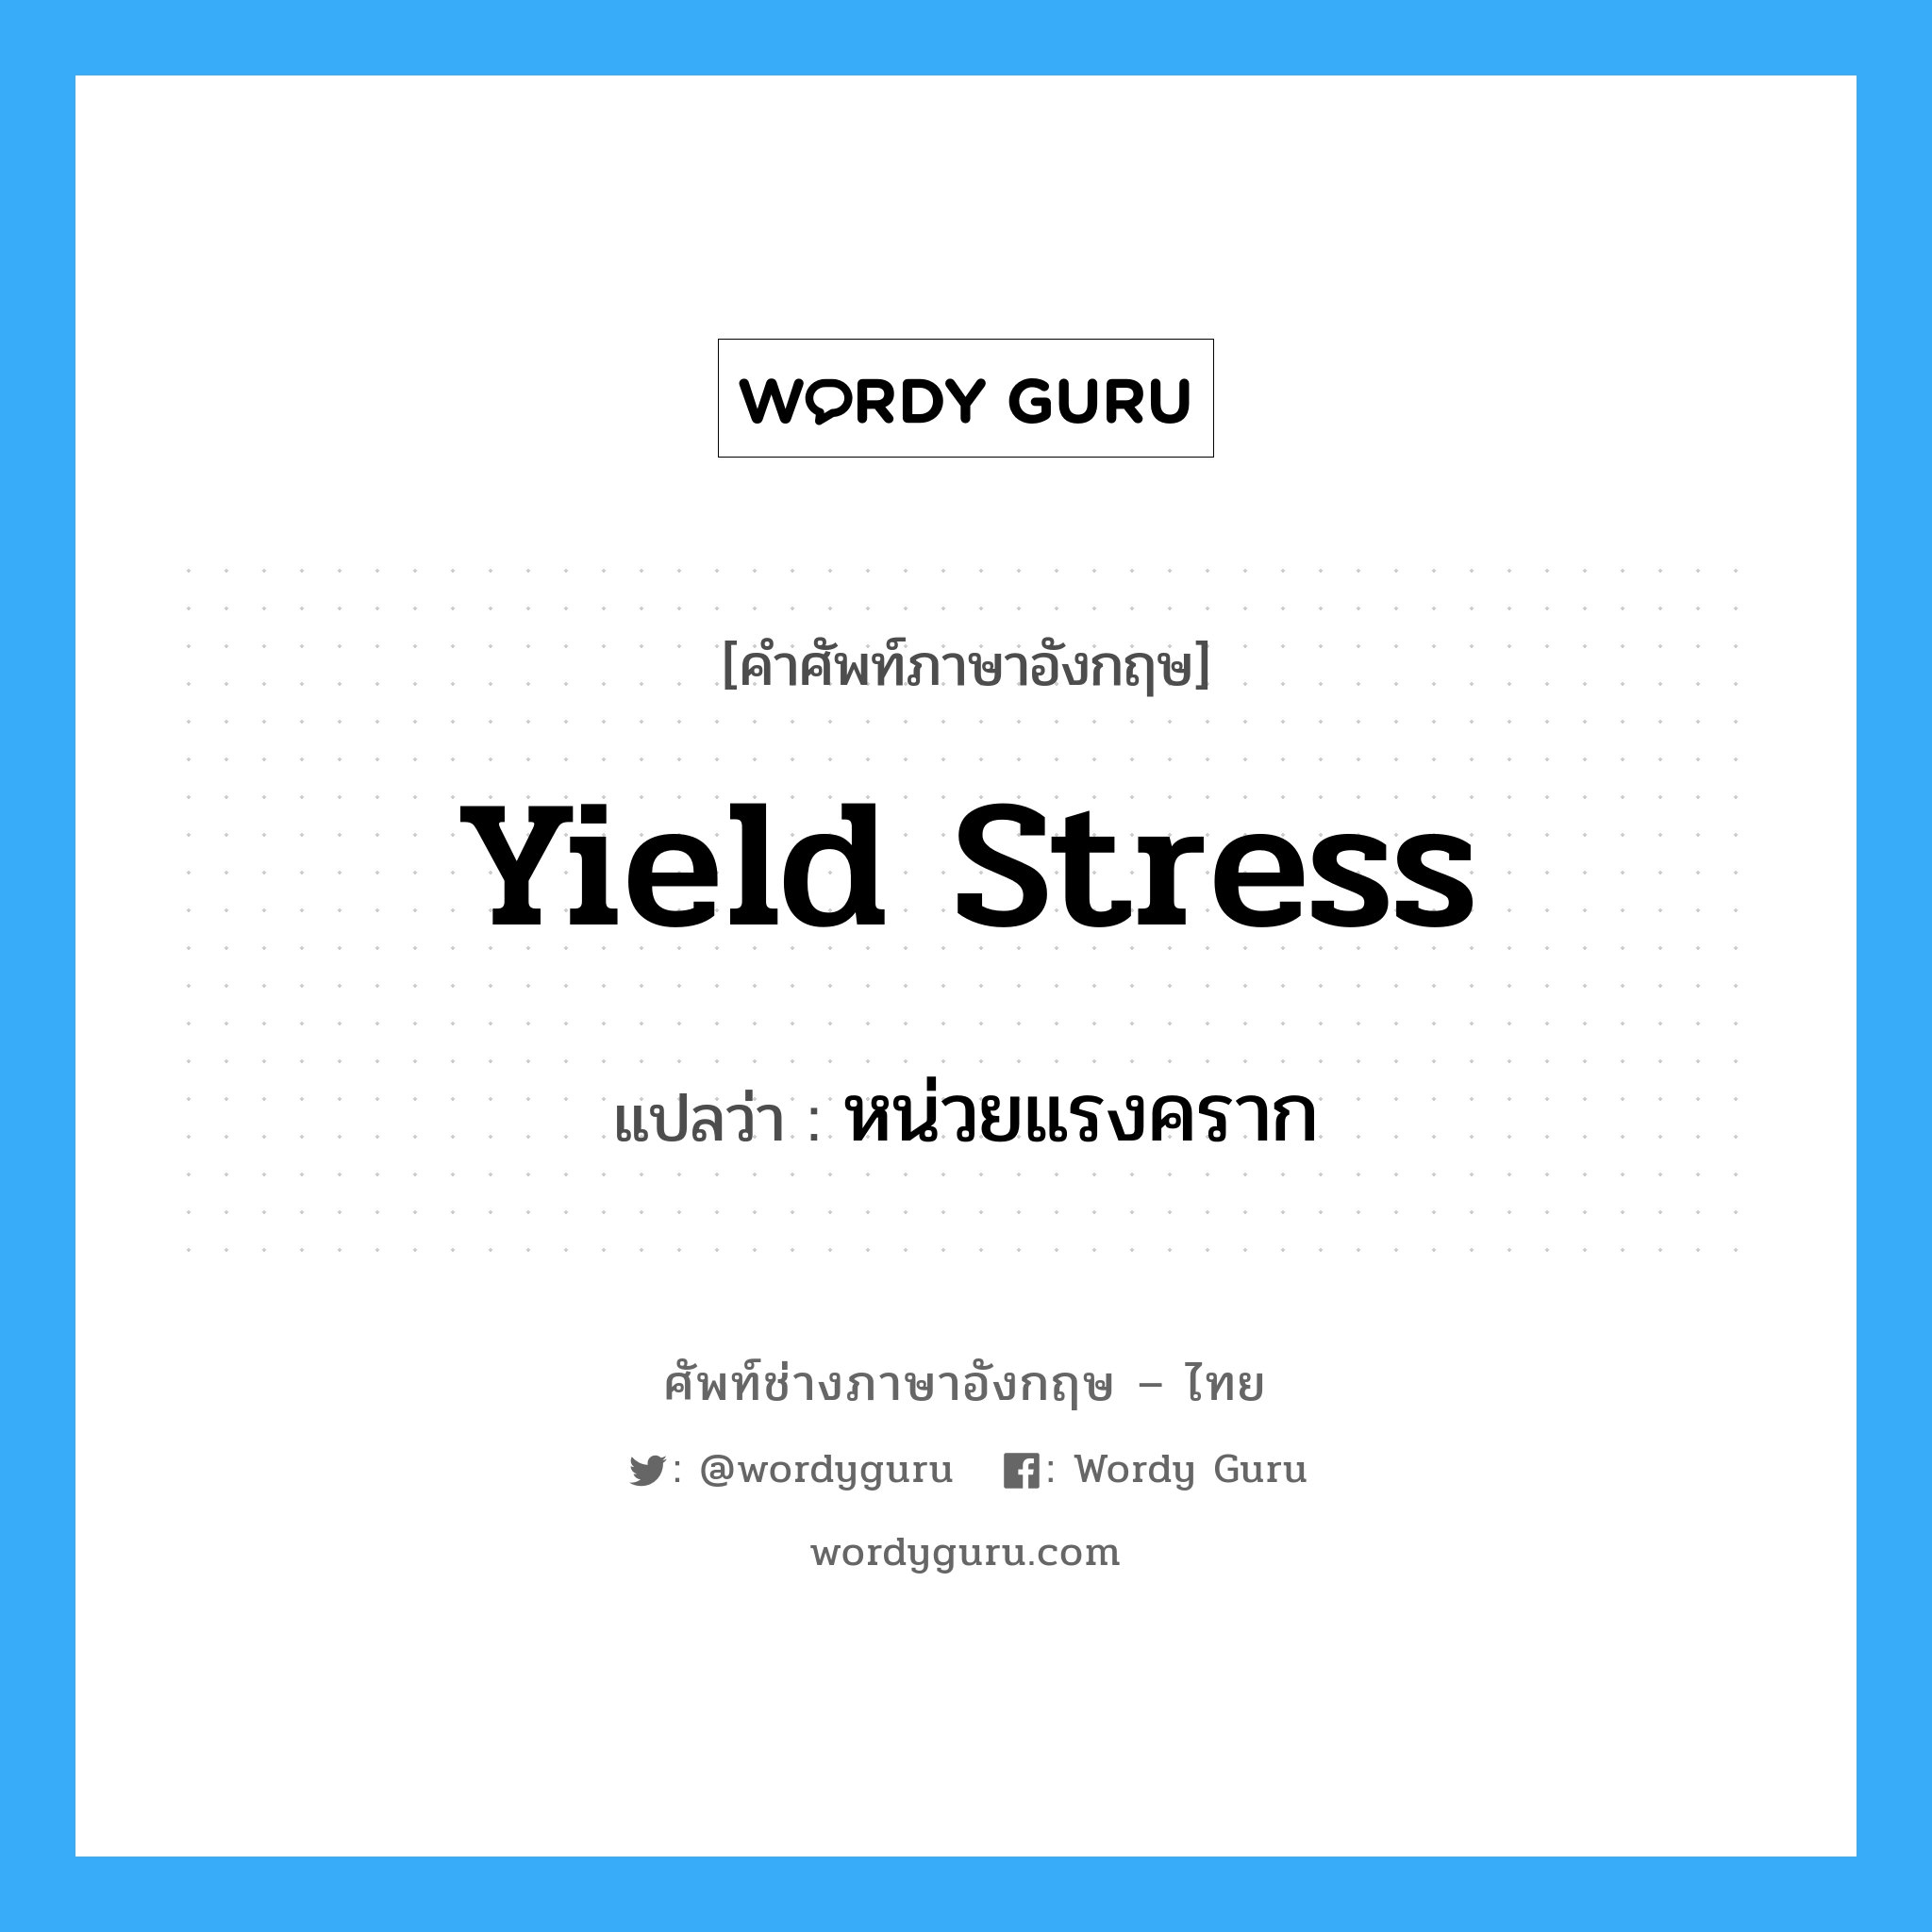 Yield stress: แปลว่า?, คำศัพท์ช่างภาษาอังกฤษ - ไทย yield stress คำศัพท์ภาษาอังกฤษ yield stress แปลว่า หน่วยแรงคราก